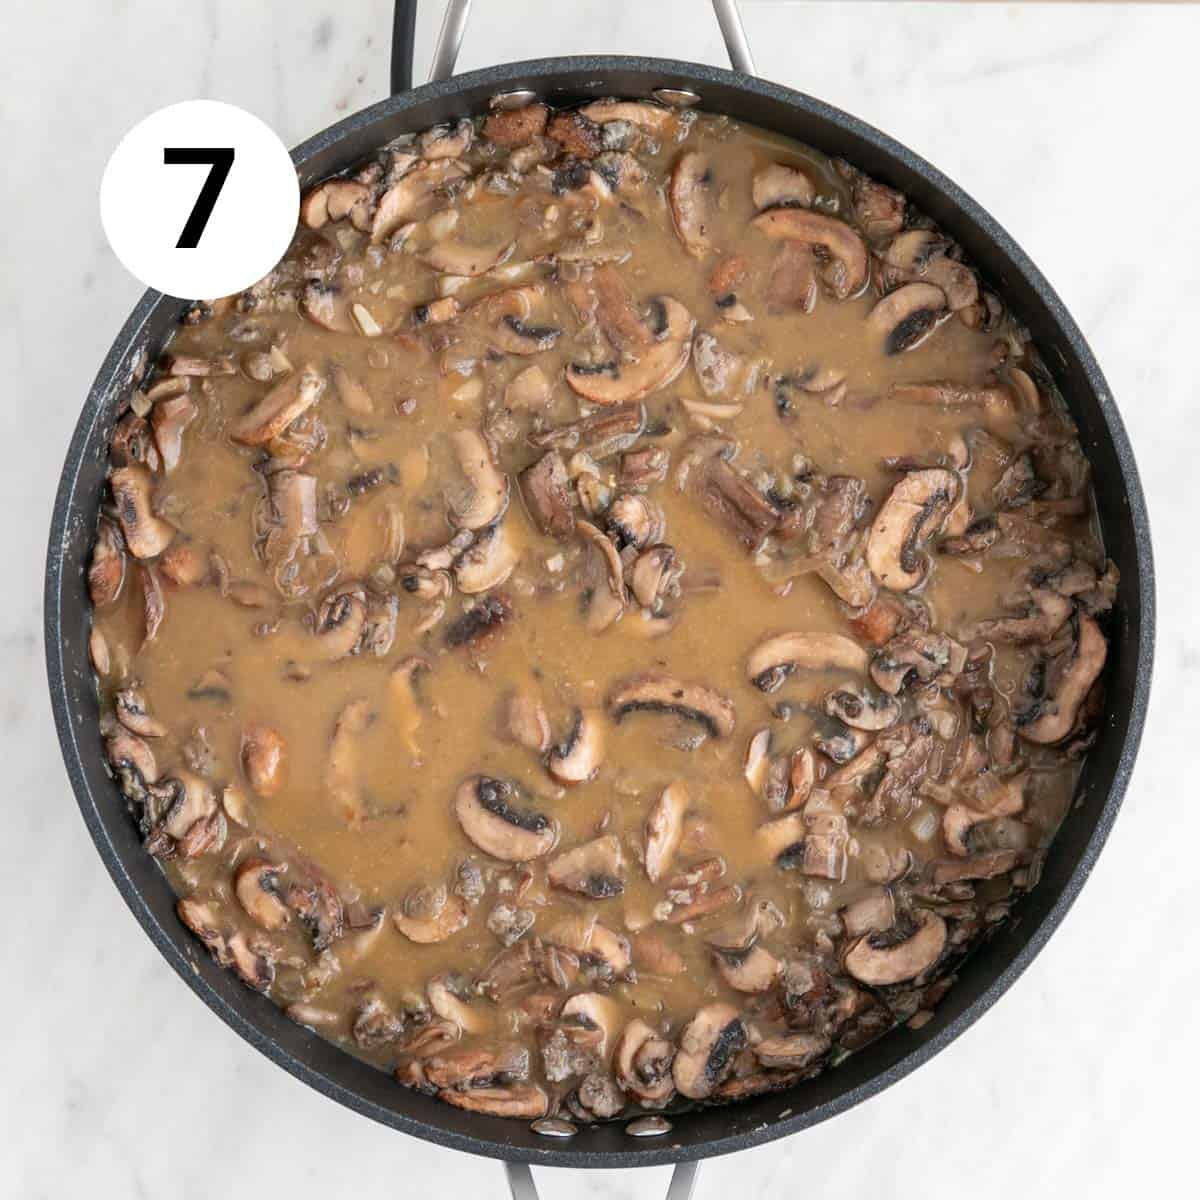 Vegan mushroom gravy before thickening.